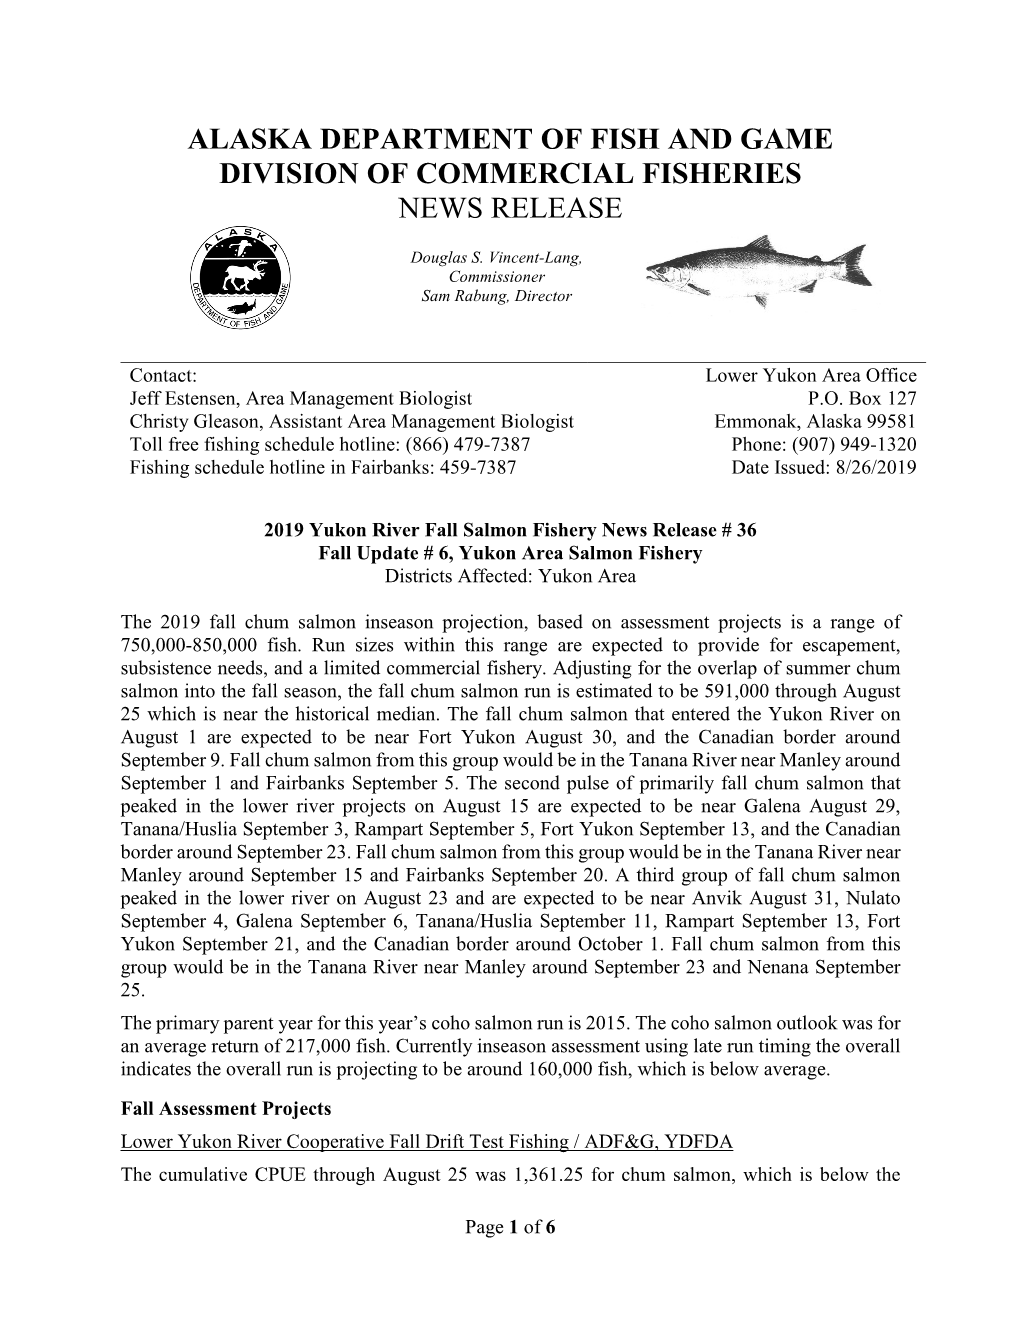 2019 Yukon River Fall Salmon Fishery News Release # 36 Fall Update # 6, Yukon Area Salmon Fishery Districts Affected: Yukon Area